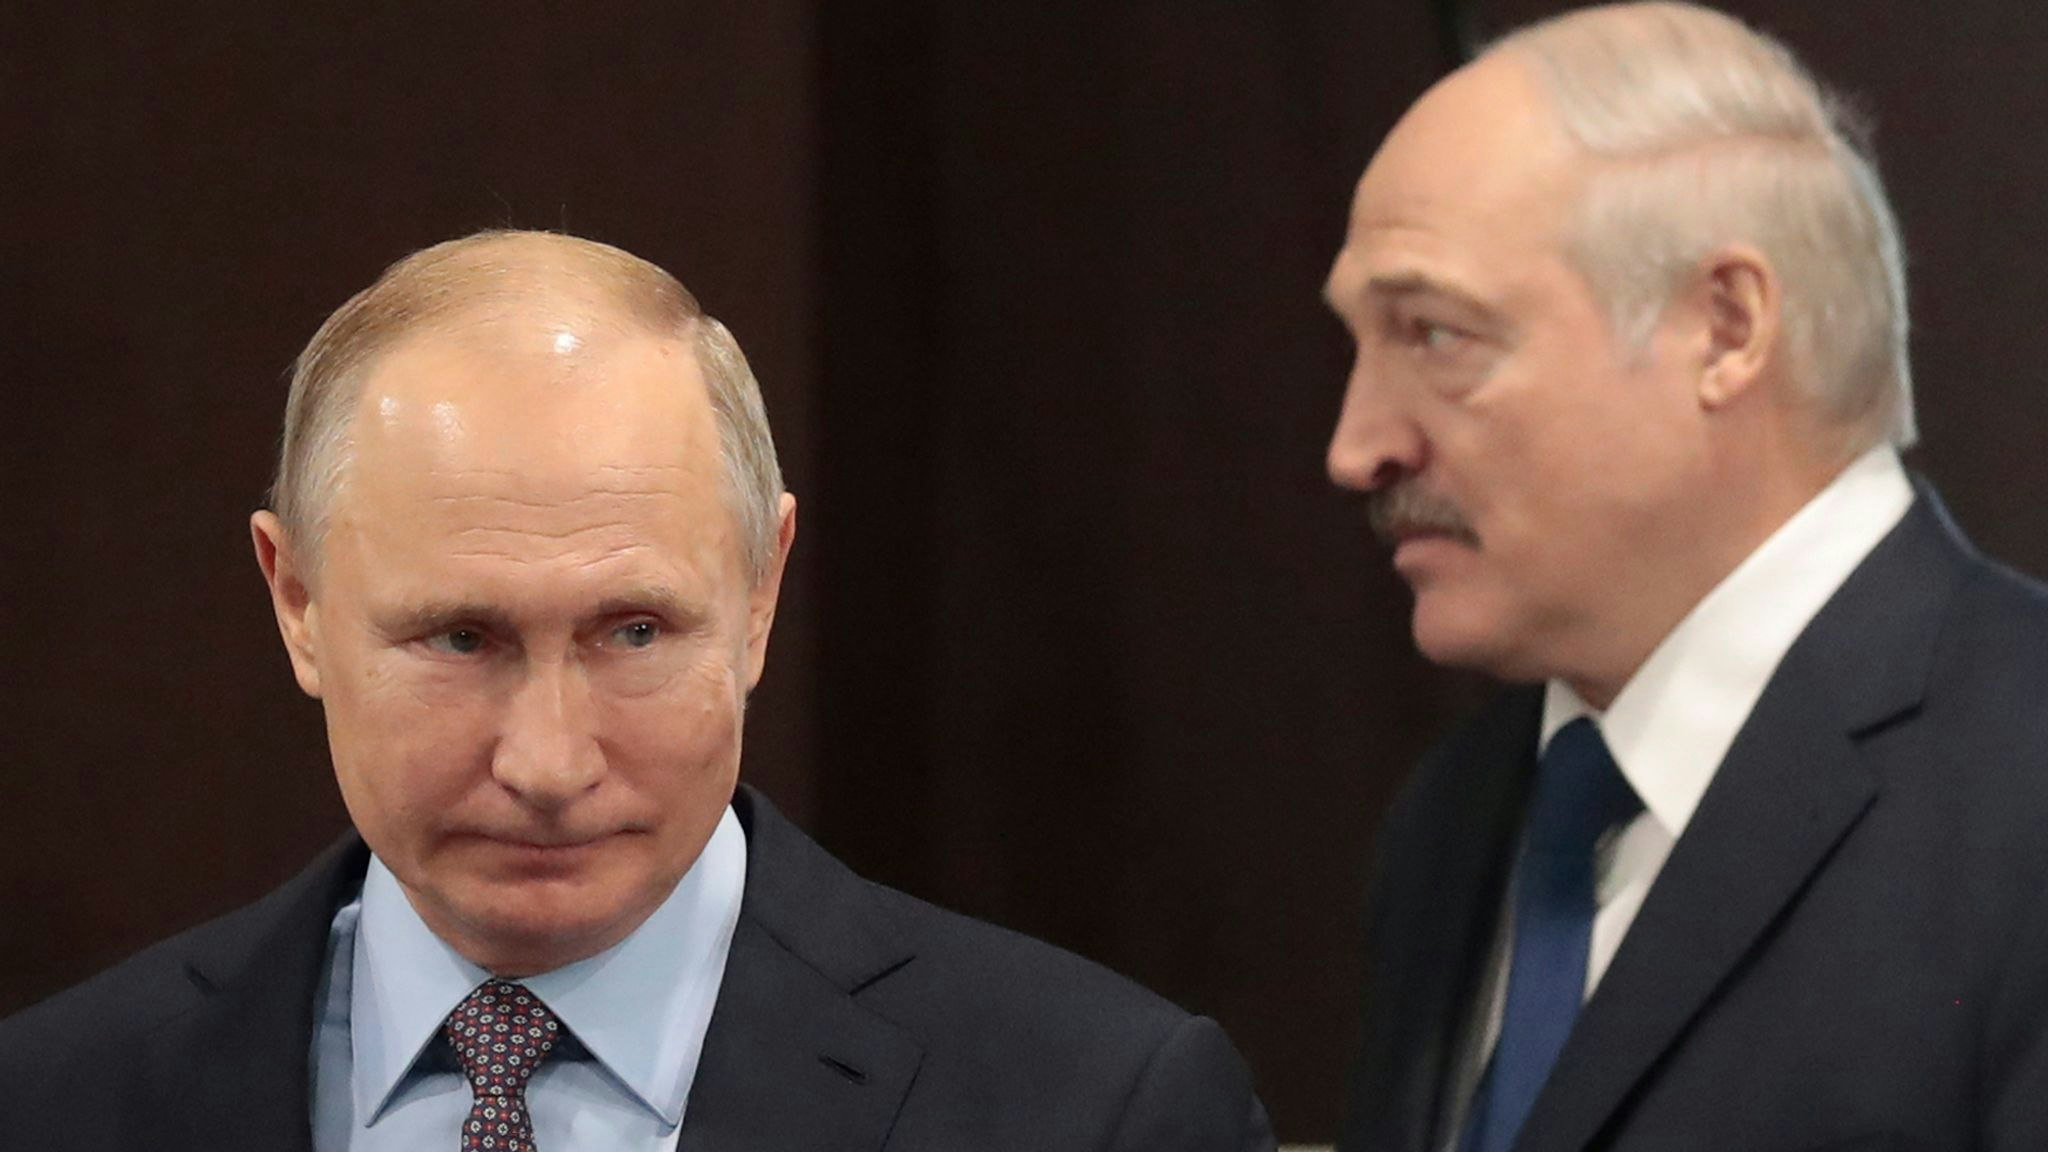 Kremlchef Wladimir Putin (r) und der belarussische Machthaber Alexander Lukashenko. Foto: dpa/Chirikov